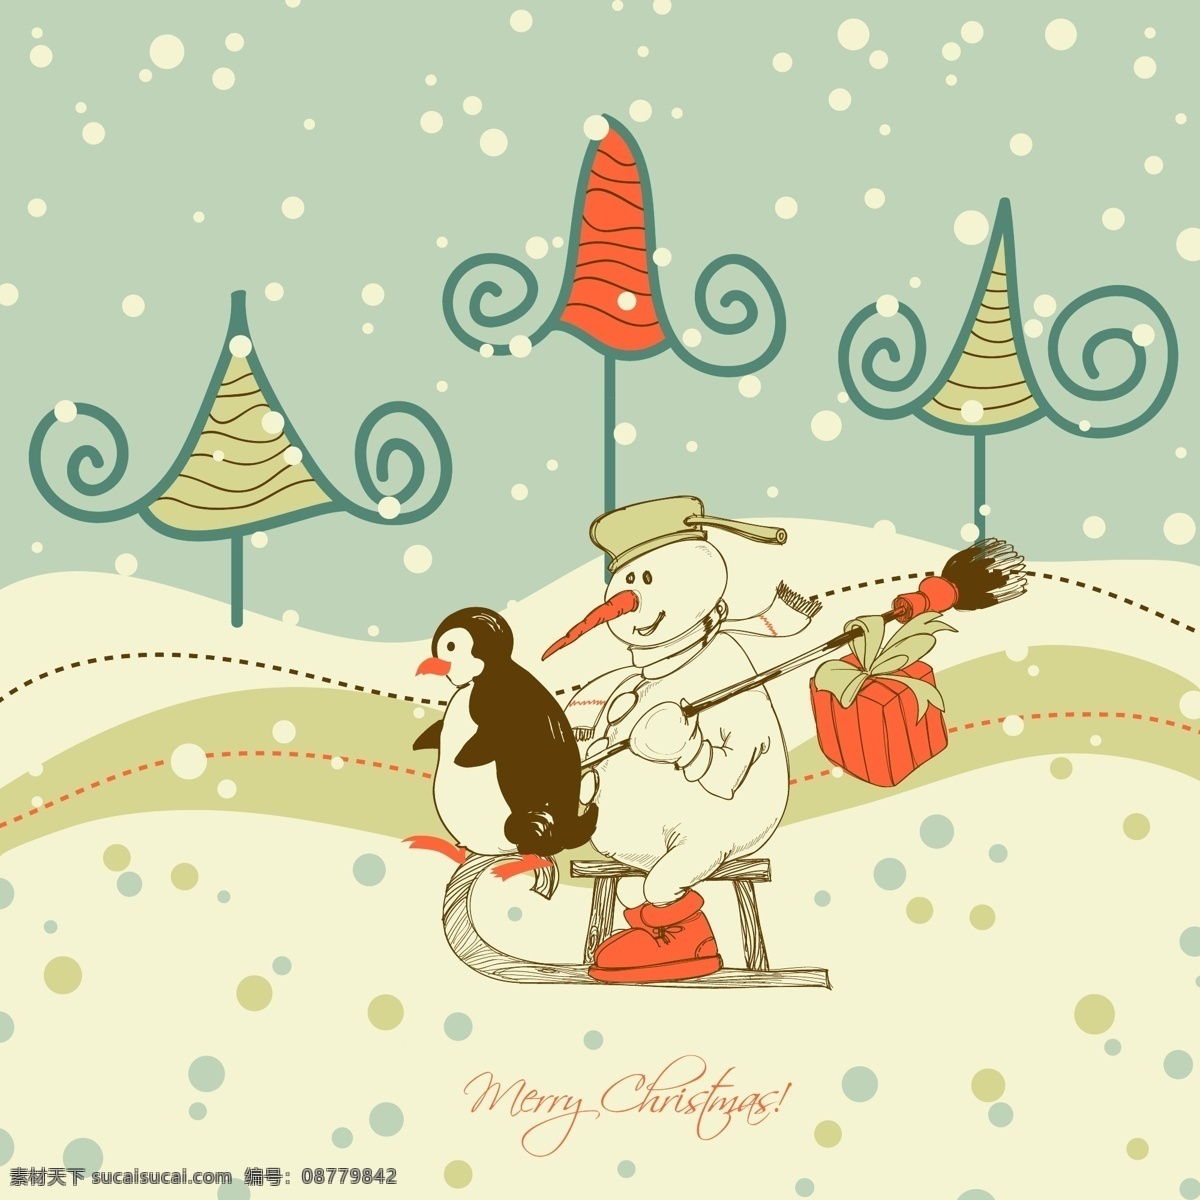 卡通 雪人 卡片 封面 淡雅 礼物盒 企鹅 圣诞树 雪橇 节日素材 圣诞节